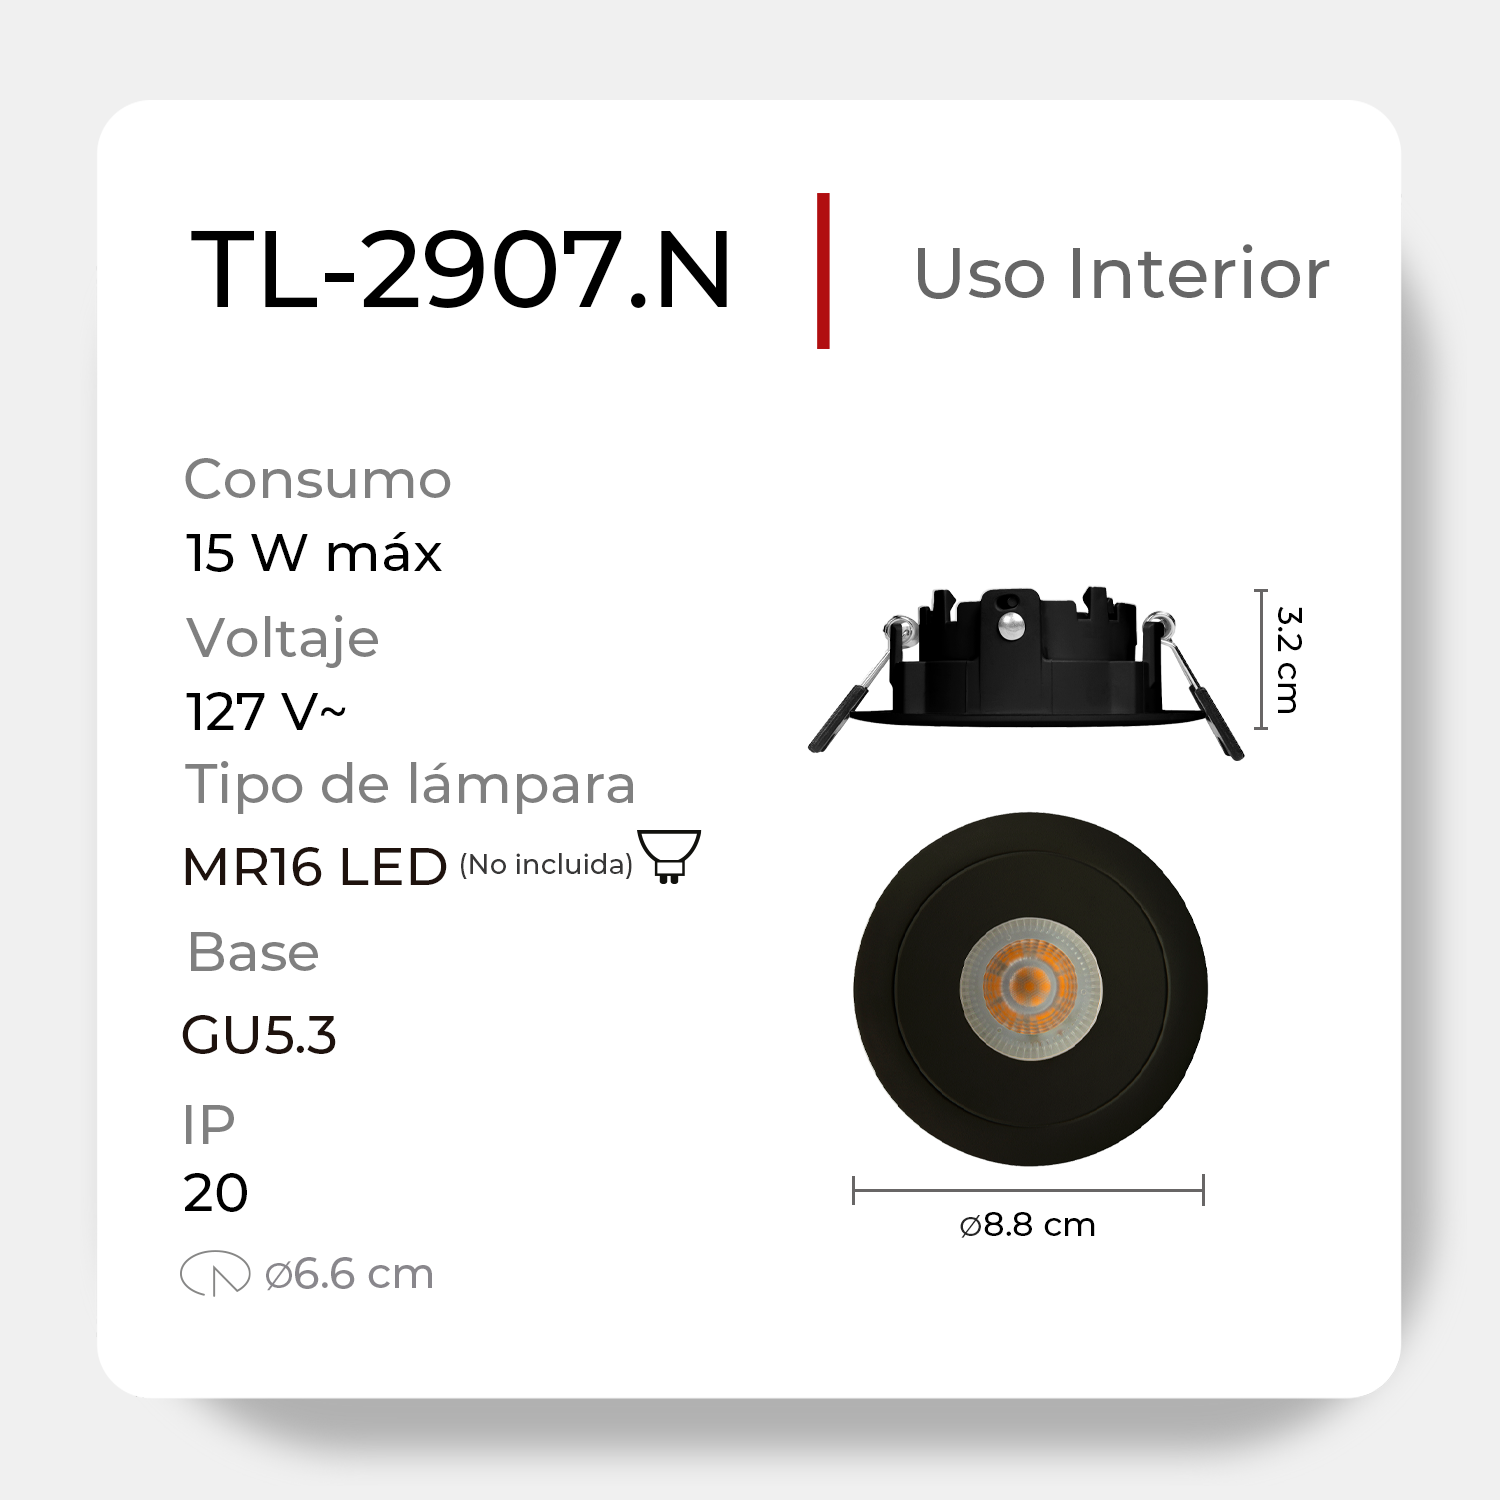 Luminaria LED Dirigible de Empotrar en Techo Antideslumbrante Tipo Dot 15W - Modelo: TL-2907